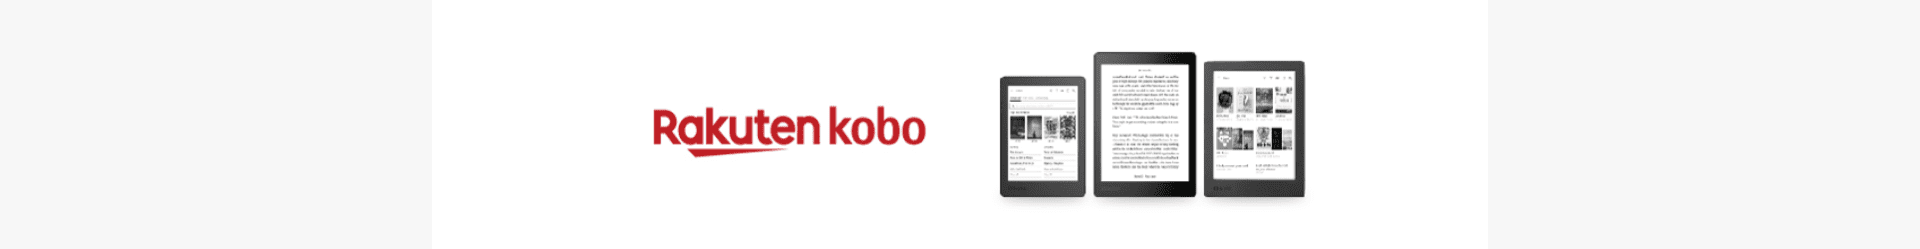 Façons de lire avec la liseuse Kobo  Rakuten Kobo Boutique Liseuse France